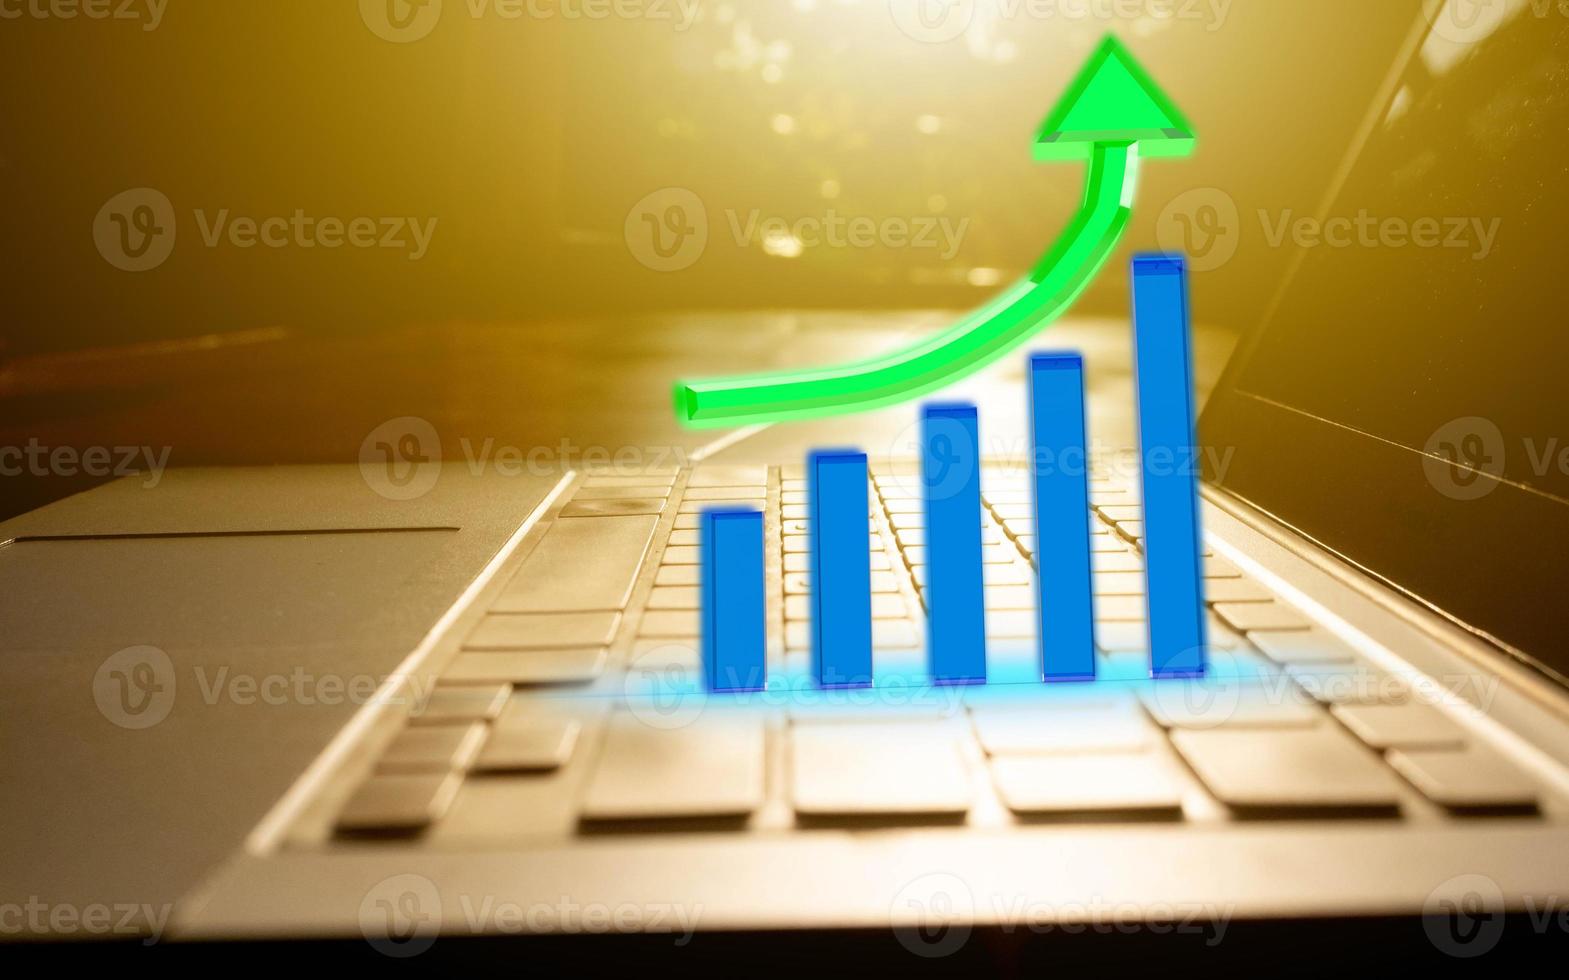 computer notebook tablet tastiera controllo grafico grafico blu verde freccia crescita su direzione statistica dati affari vendita marketing finanziario quota azionario investimento economia commerciante obiettivo rapporto successo foto